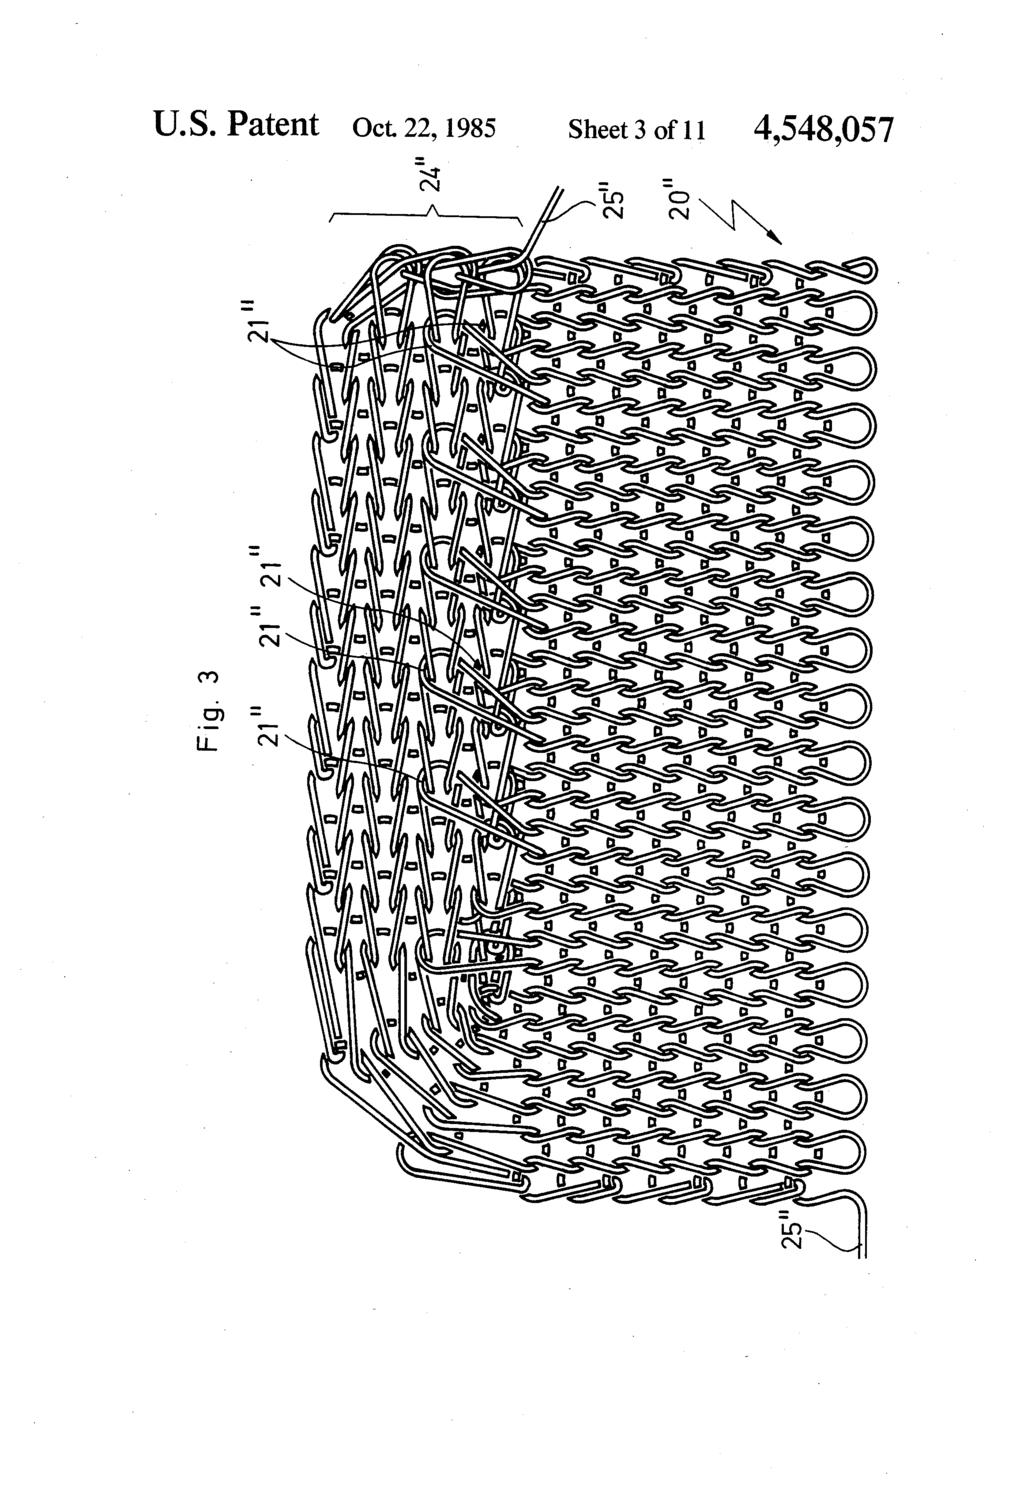 U.S. Patent Oct 22, 1985